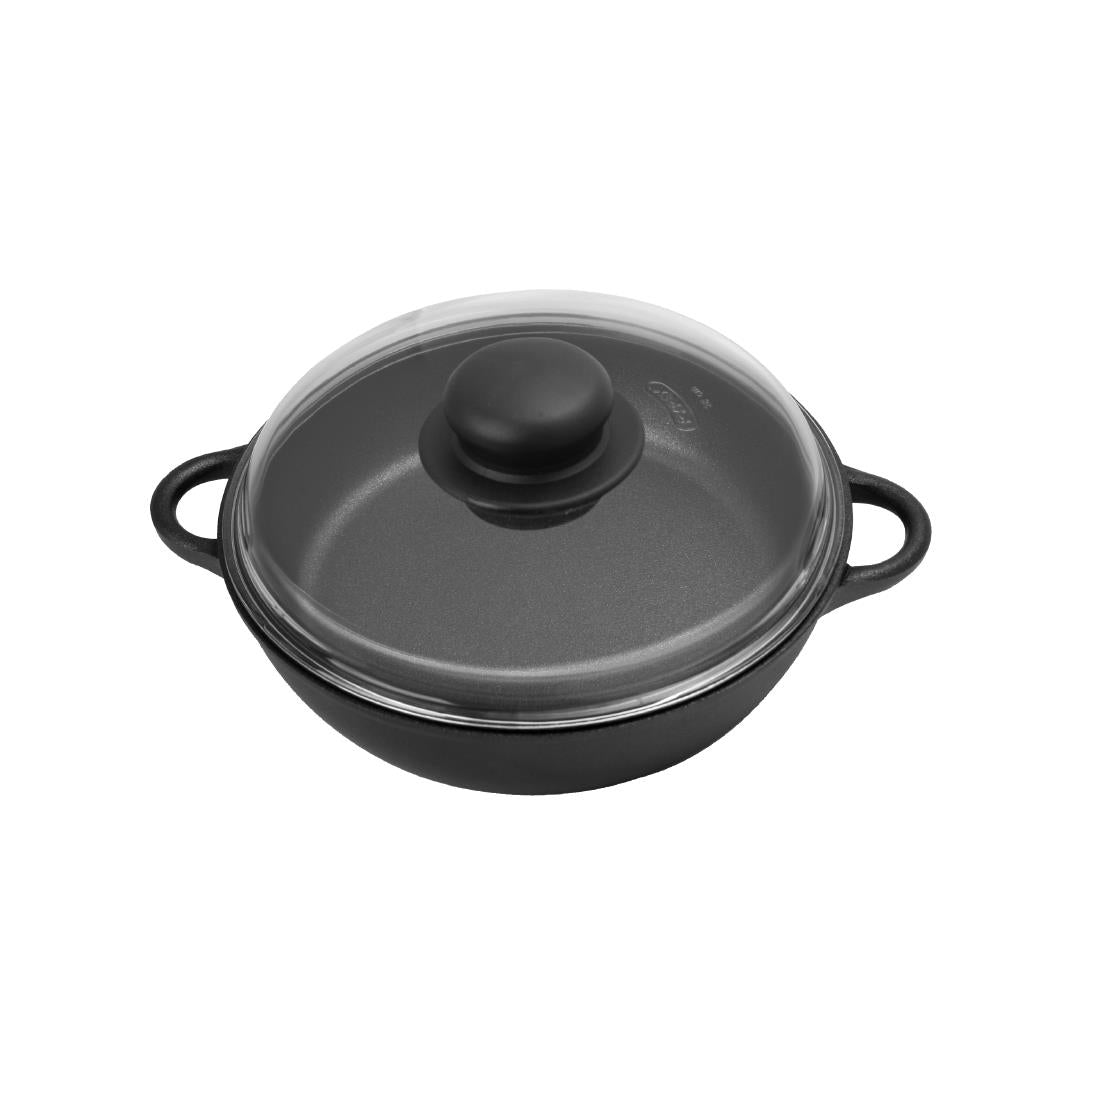 AT313 Josper Charcoal Oven Casserole Dish Ã˜ 16